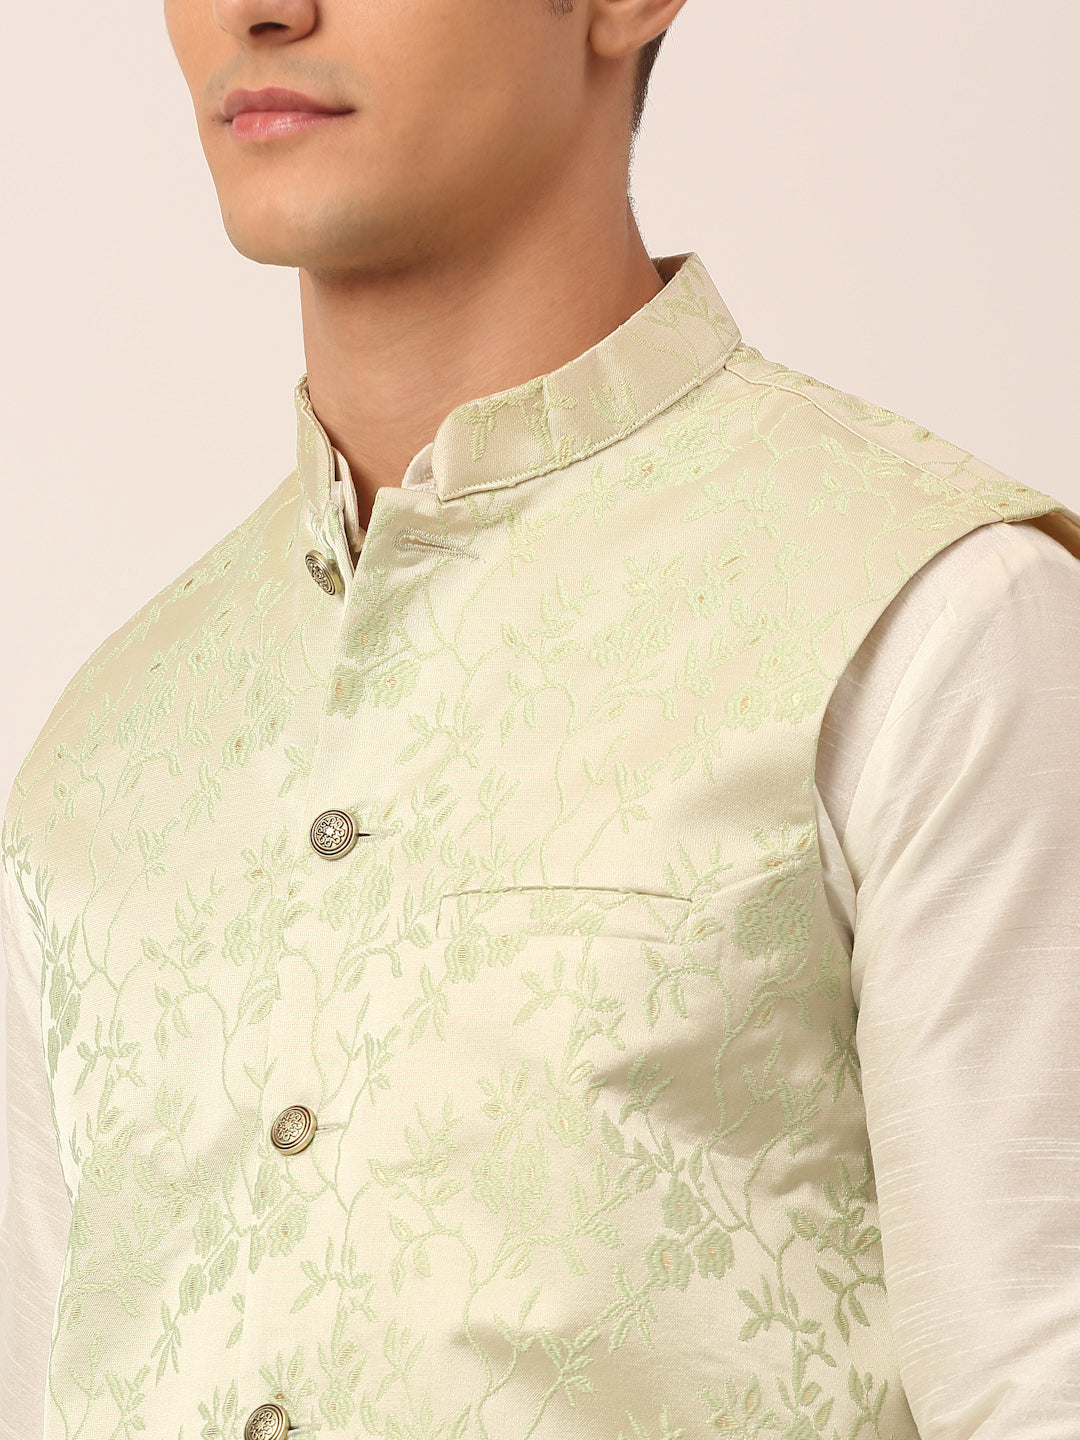 Men's Pista Green Floral Design Nehru Jacket.